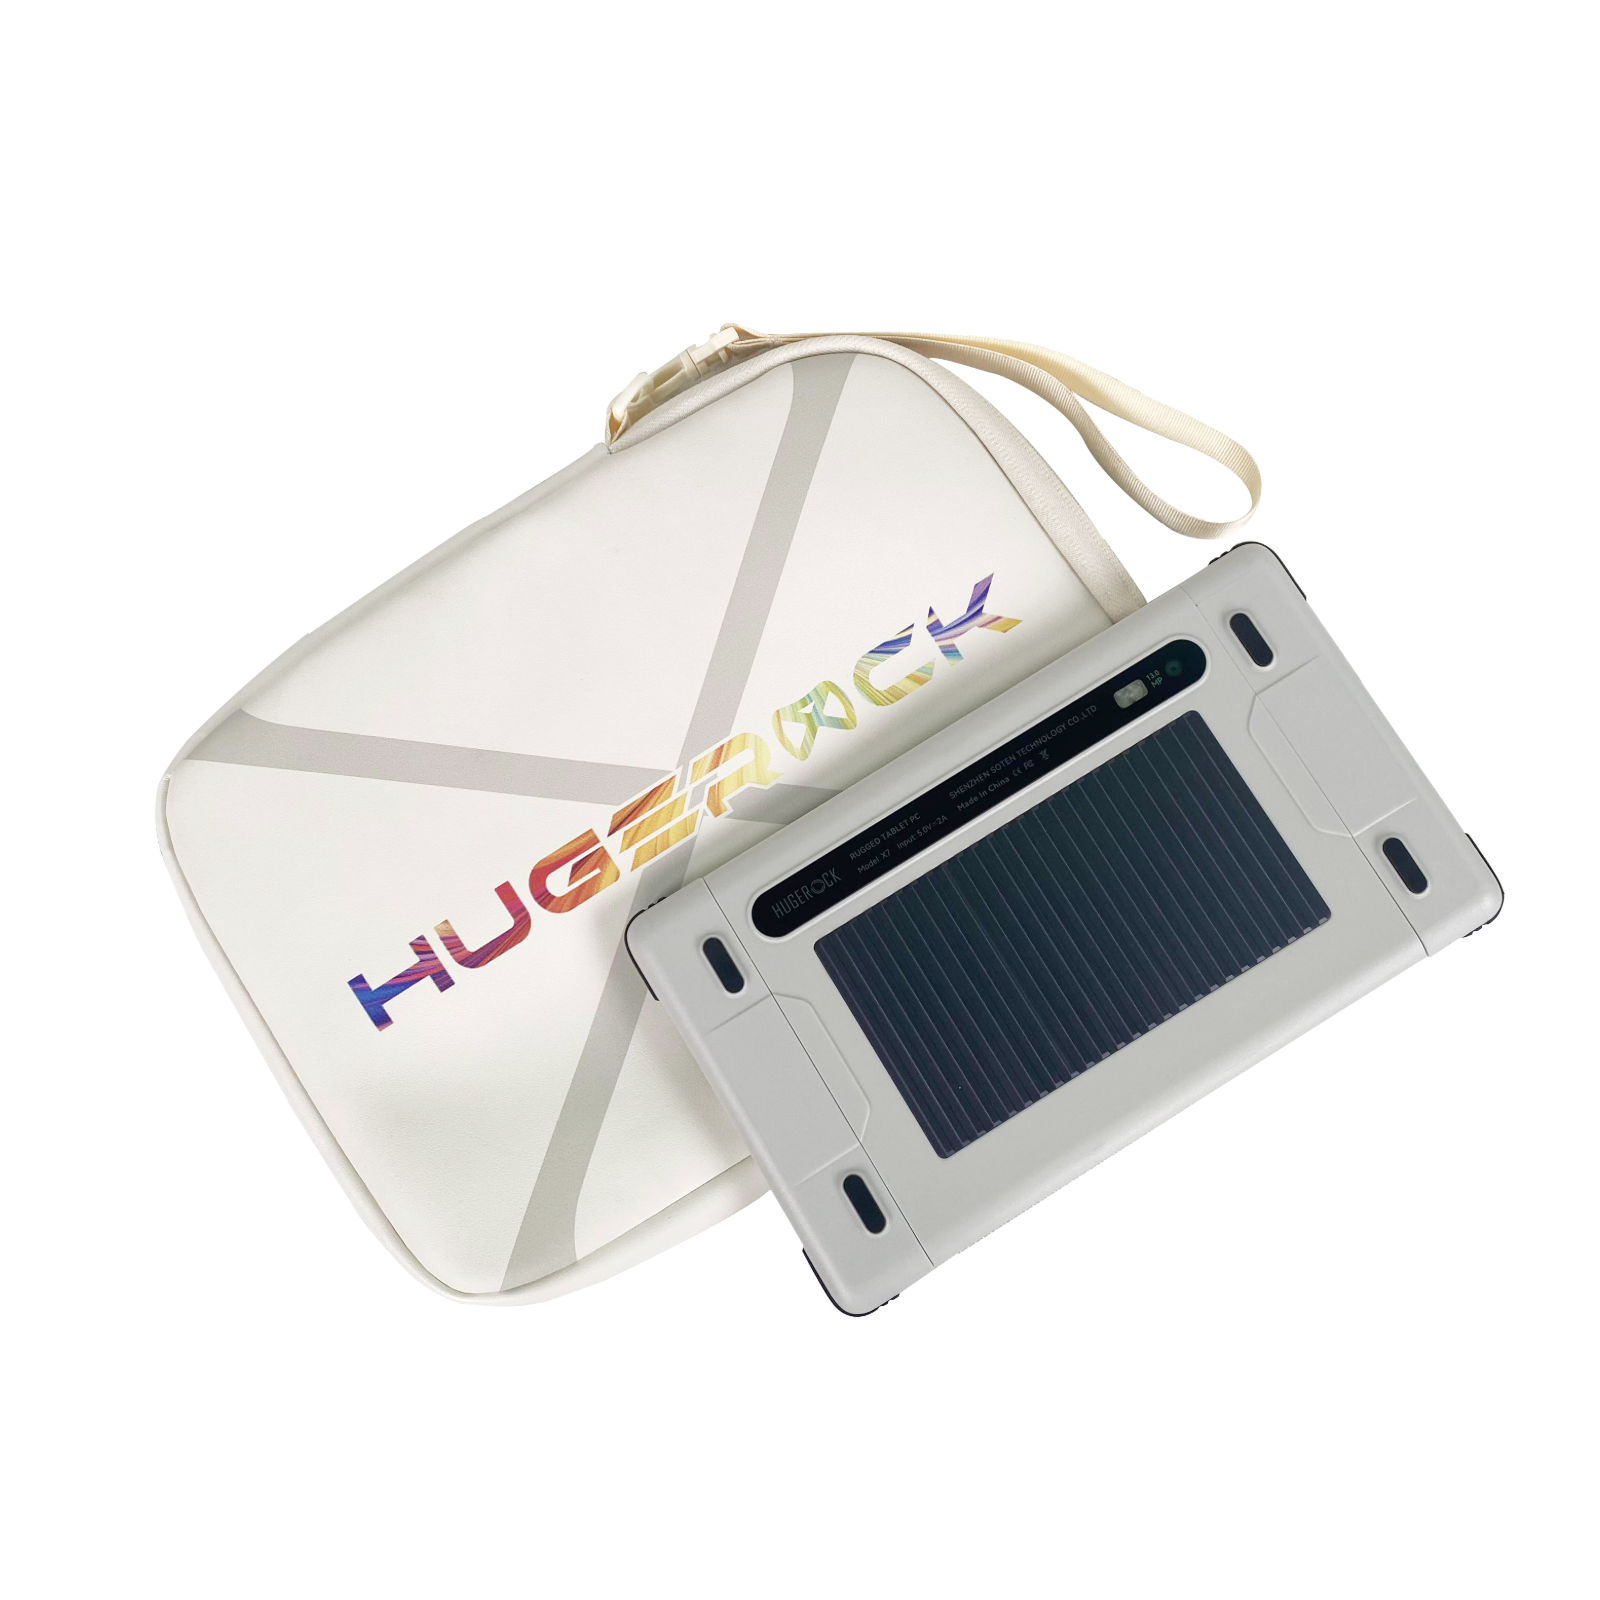 Hugerock Universal-Tablet-Tasche – wasserabweisendes PU-Leder, kratzfestes, stoßdämpfendes Futter für 9,7-Zoll-Tablets, kompatibel mit X7 und X70 